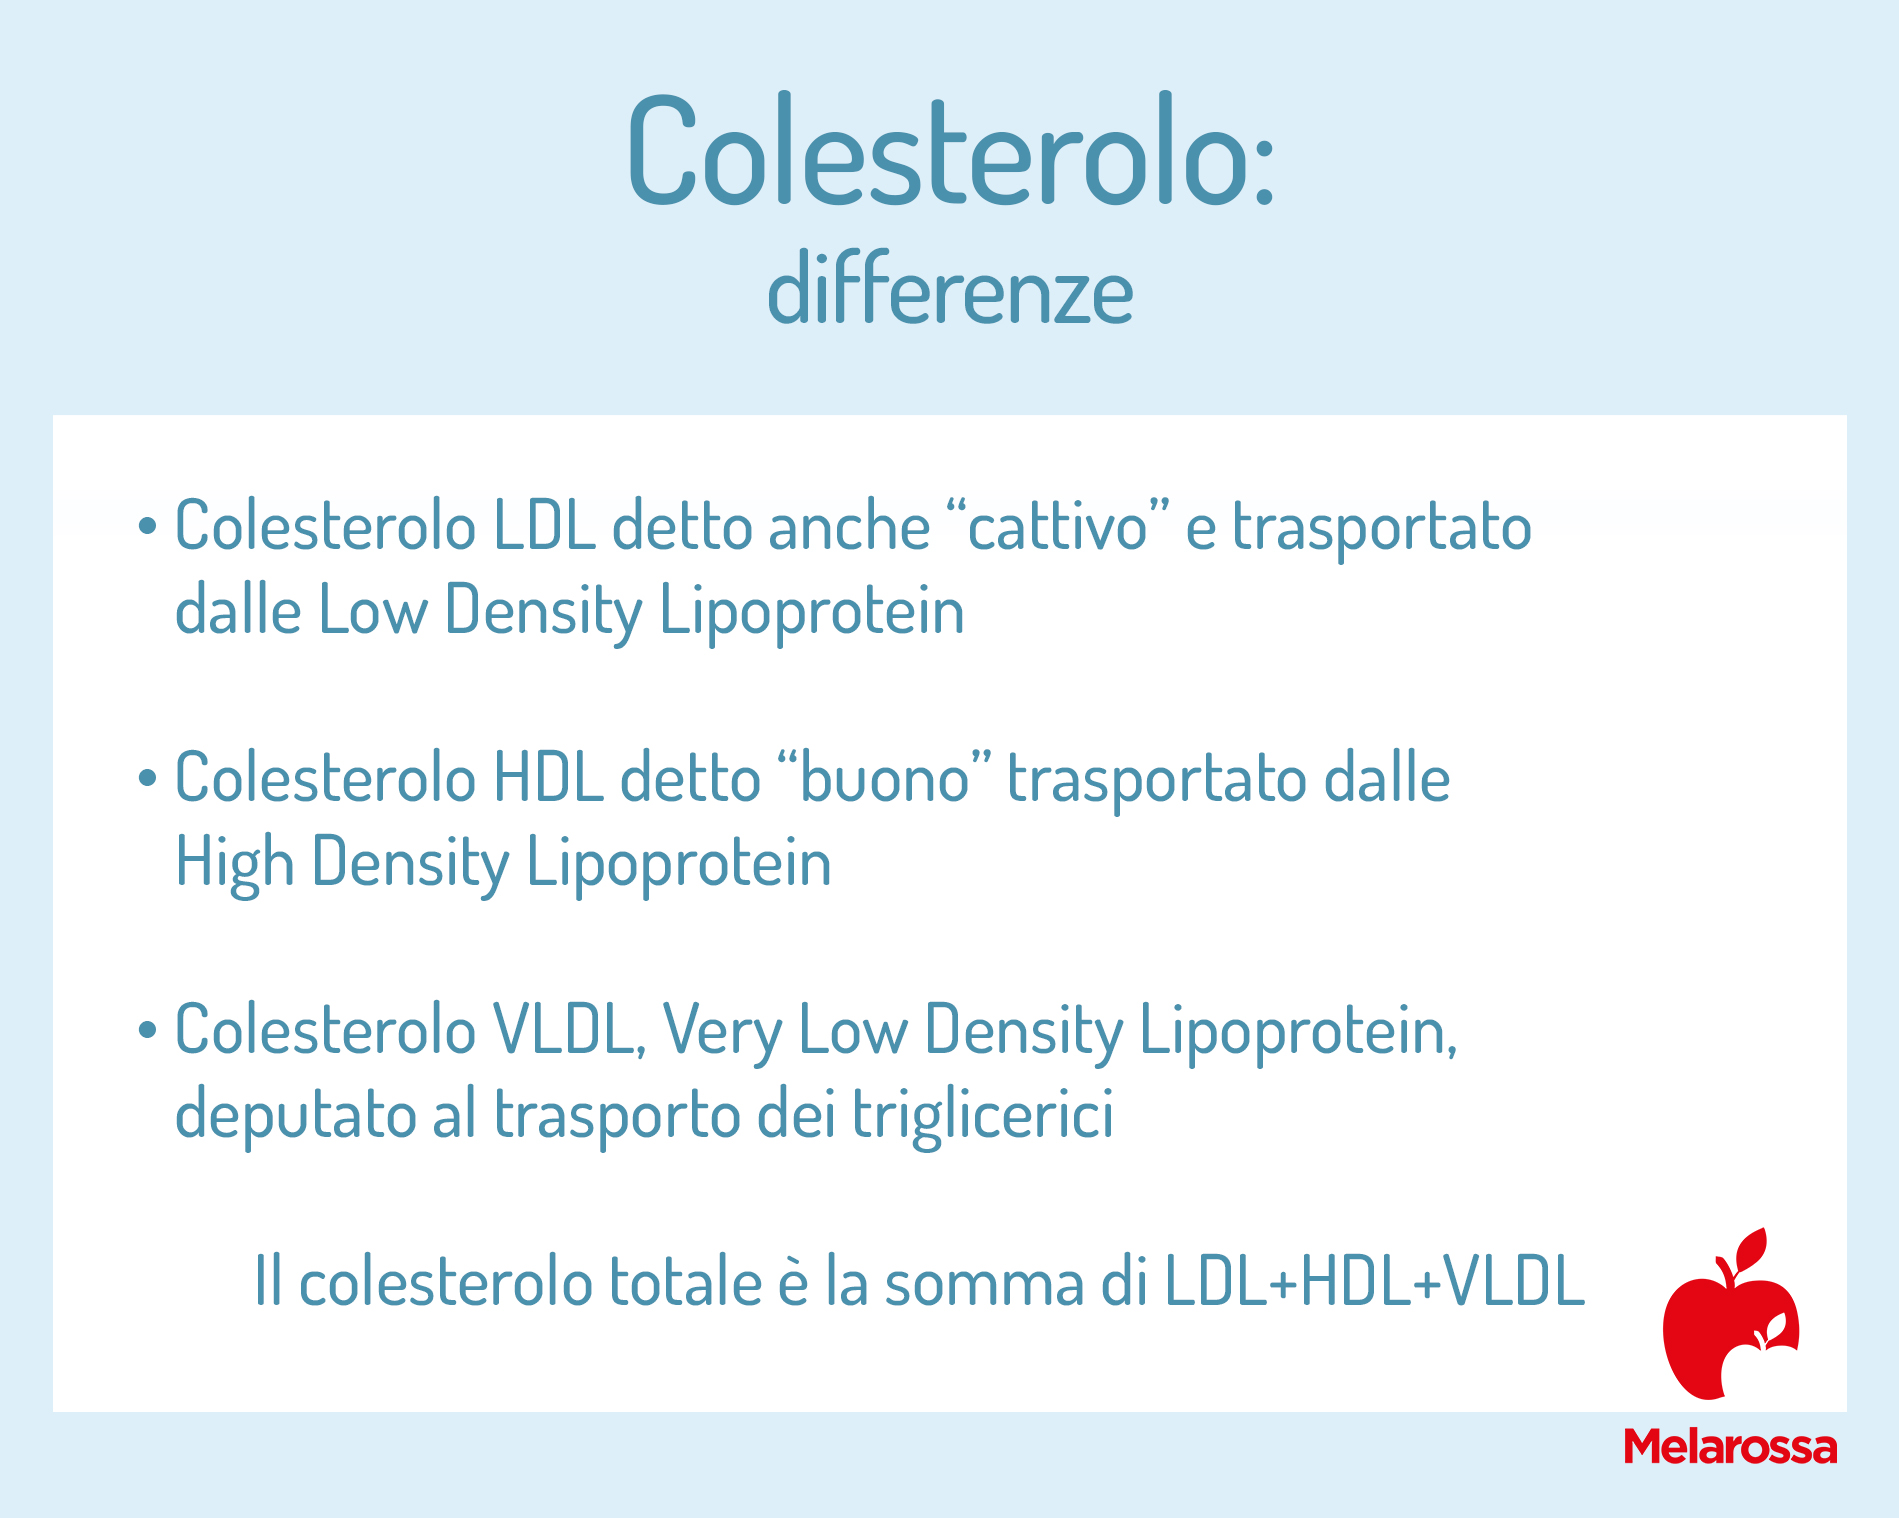 Colesterolo: differenze buono e cattivo